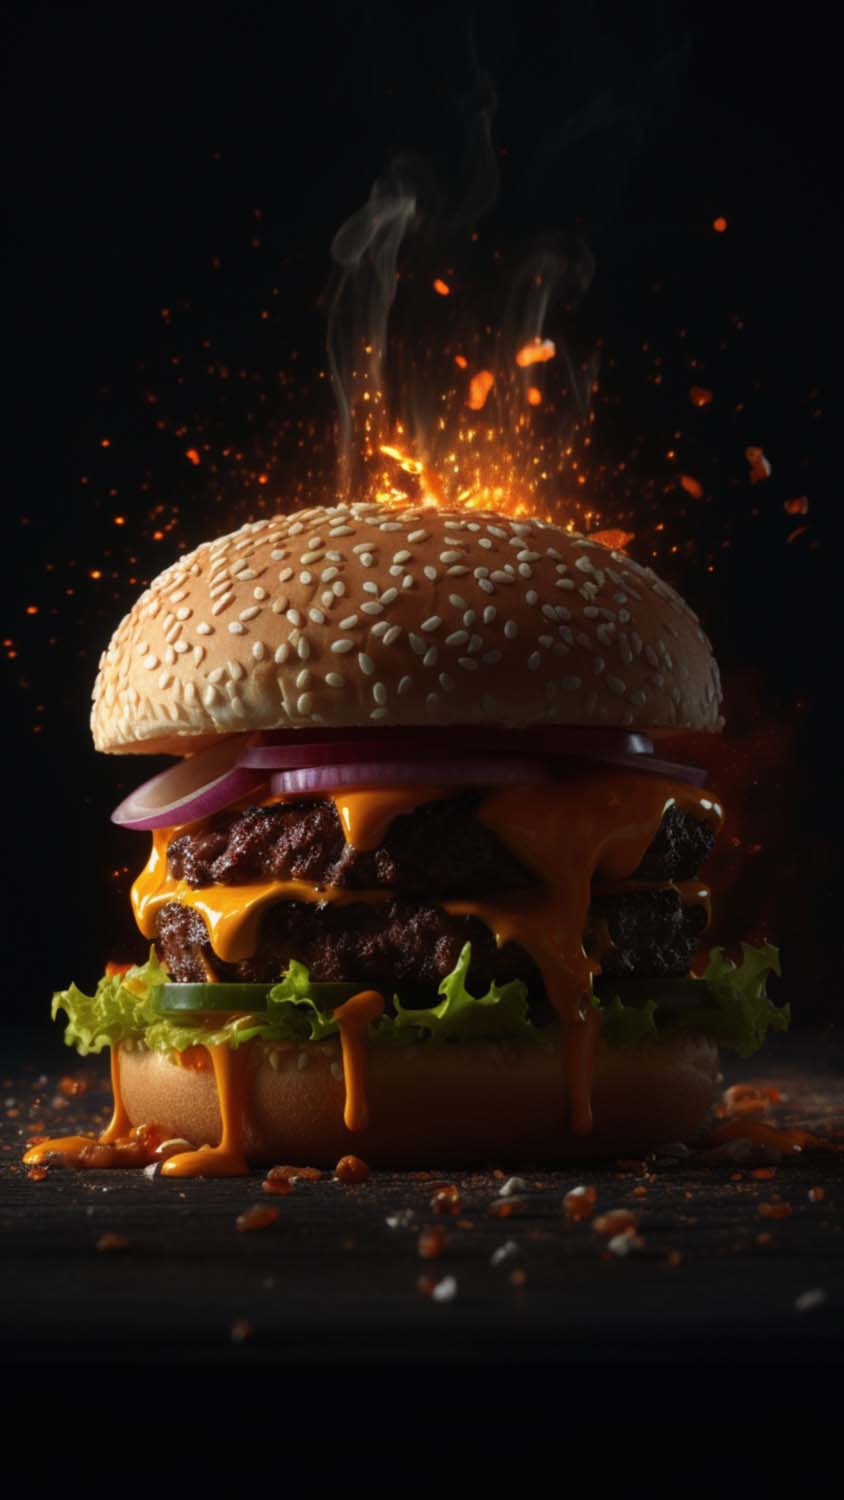 46+] Burger Wallpaper - WallpaperSafari